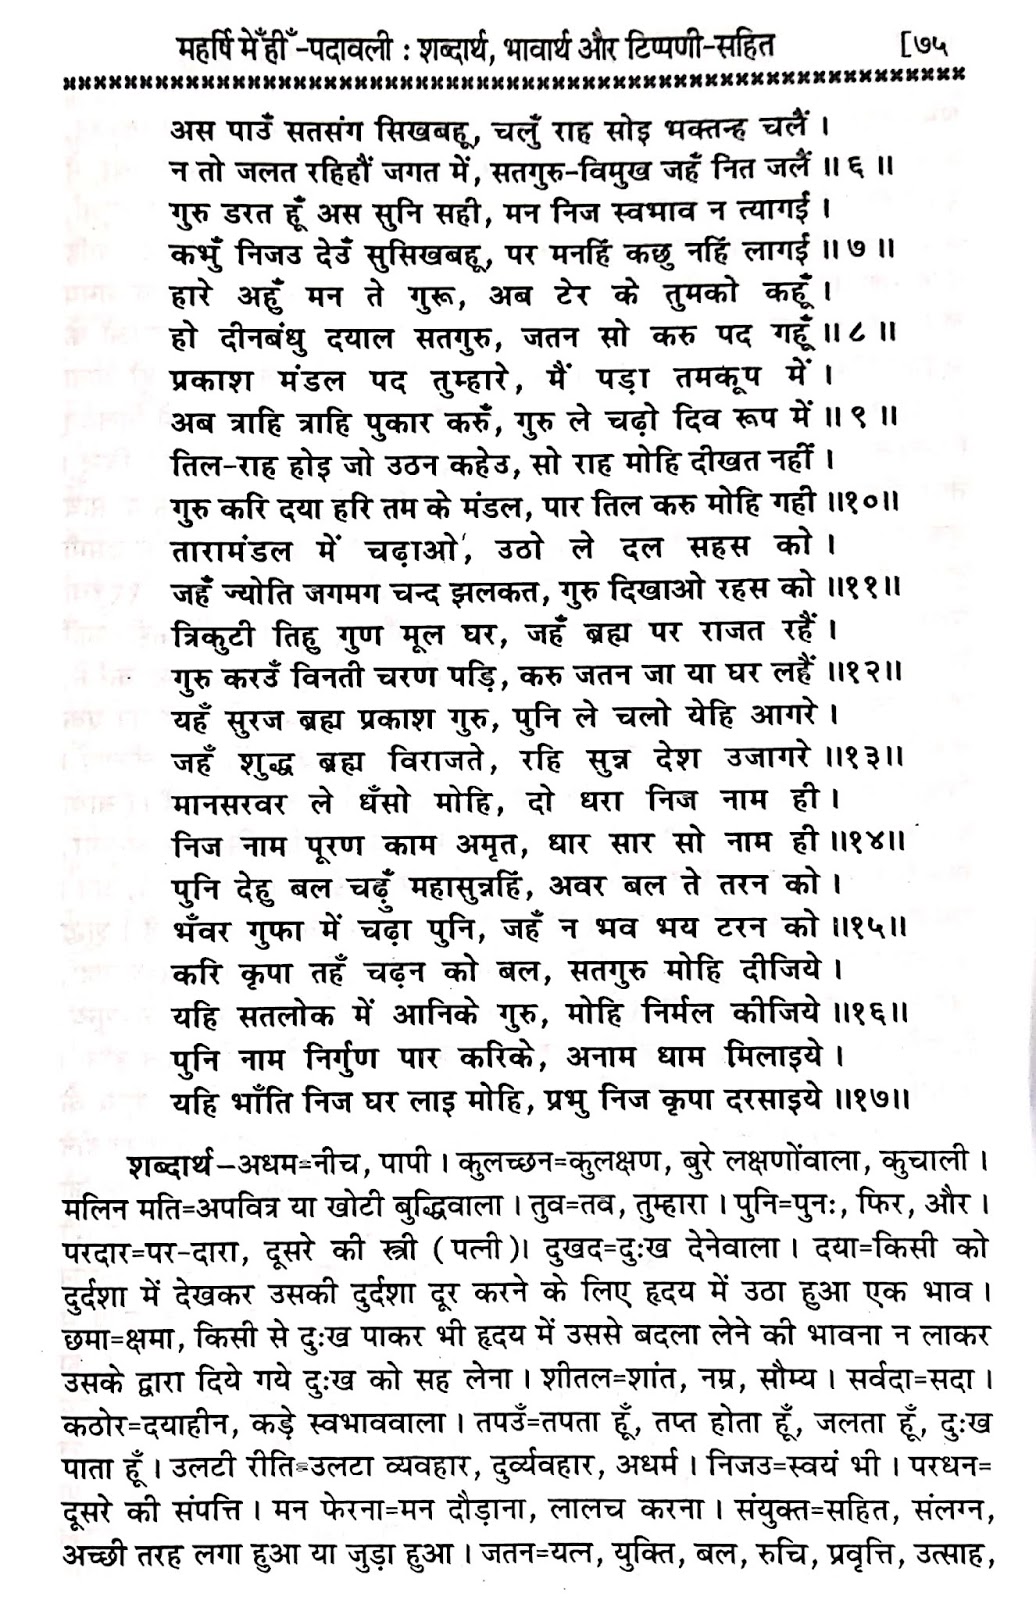 P24, Hindi Bhakti Bhajan Sadguru ki vinti, "दया प्रेम स्वरूप सद्गुरु,..." महर्षि मेंहीं पदावली अर्थ सहित. पदावली भजन 24 शब्दार्थ।